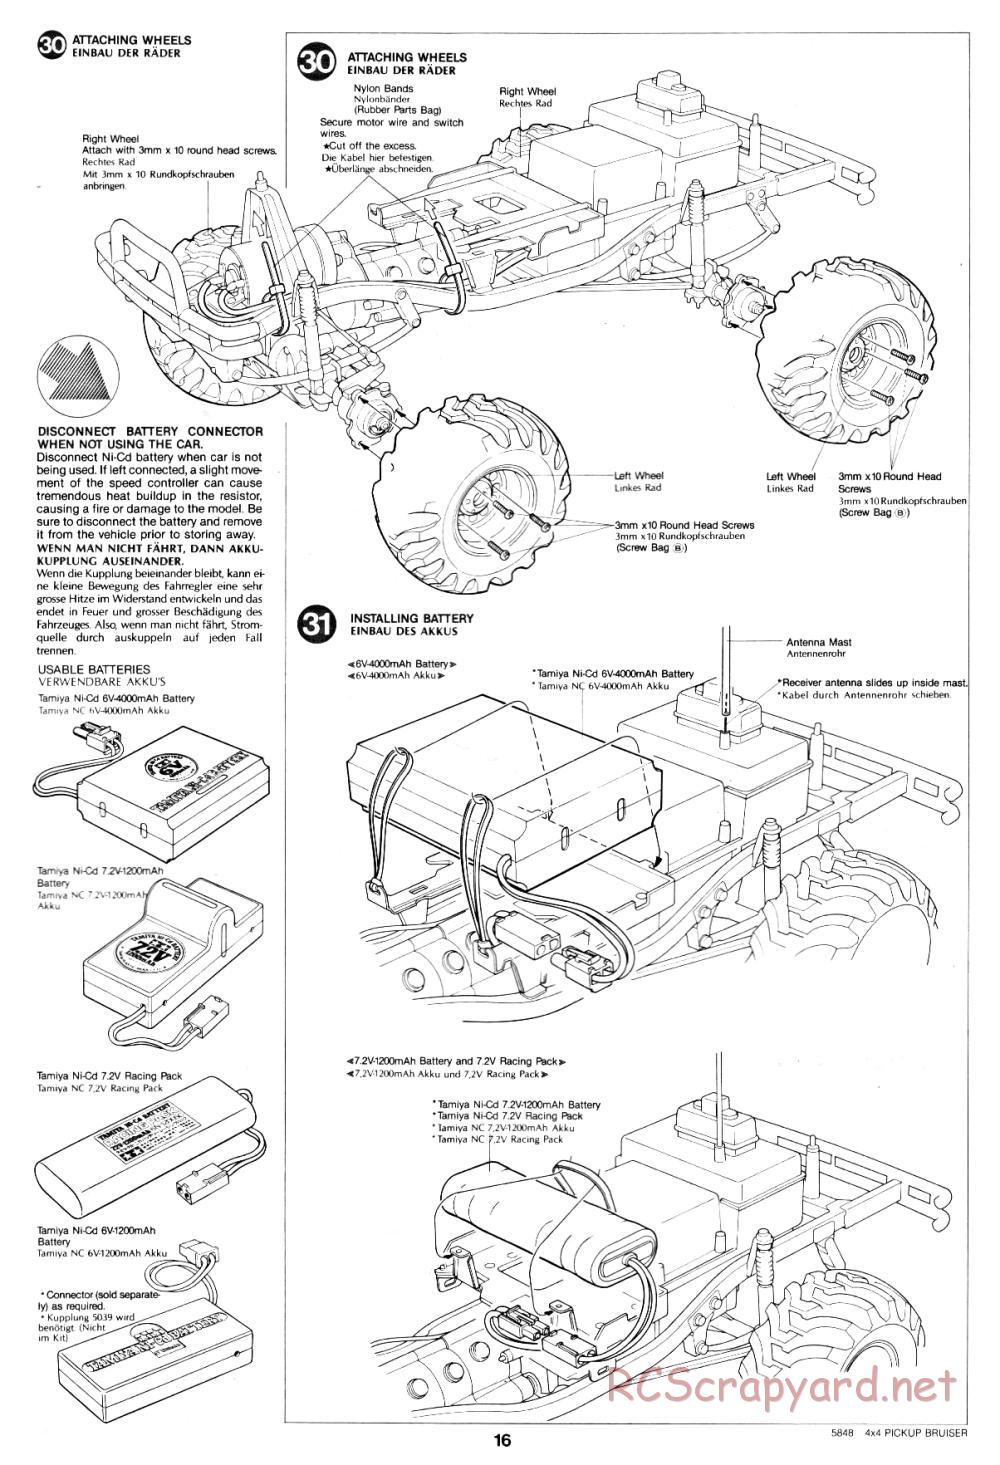 Tamiya - Toyota 4x4 Pick-Up Bruiser - 58048 - Manual - Page 16